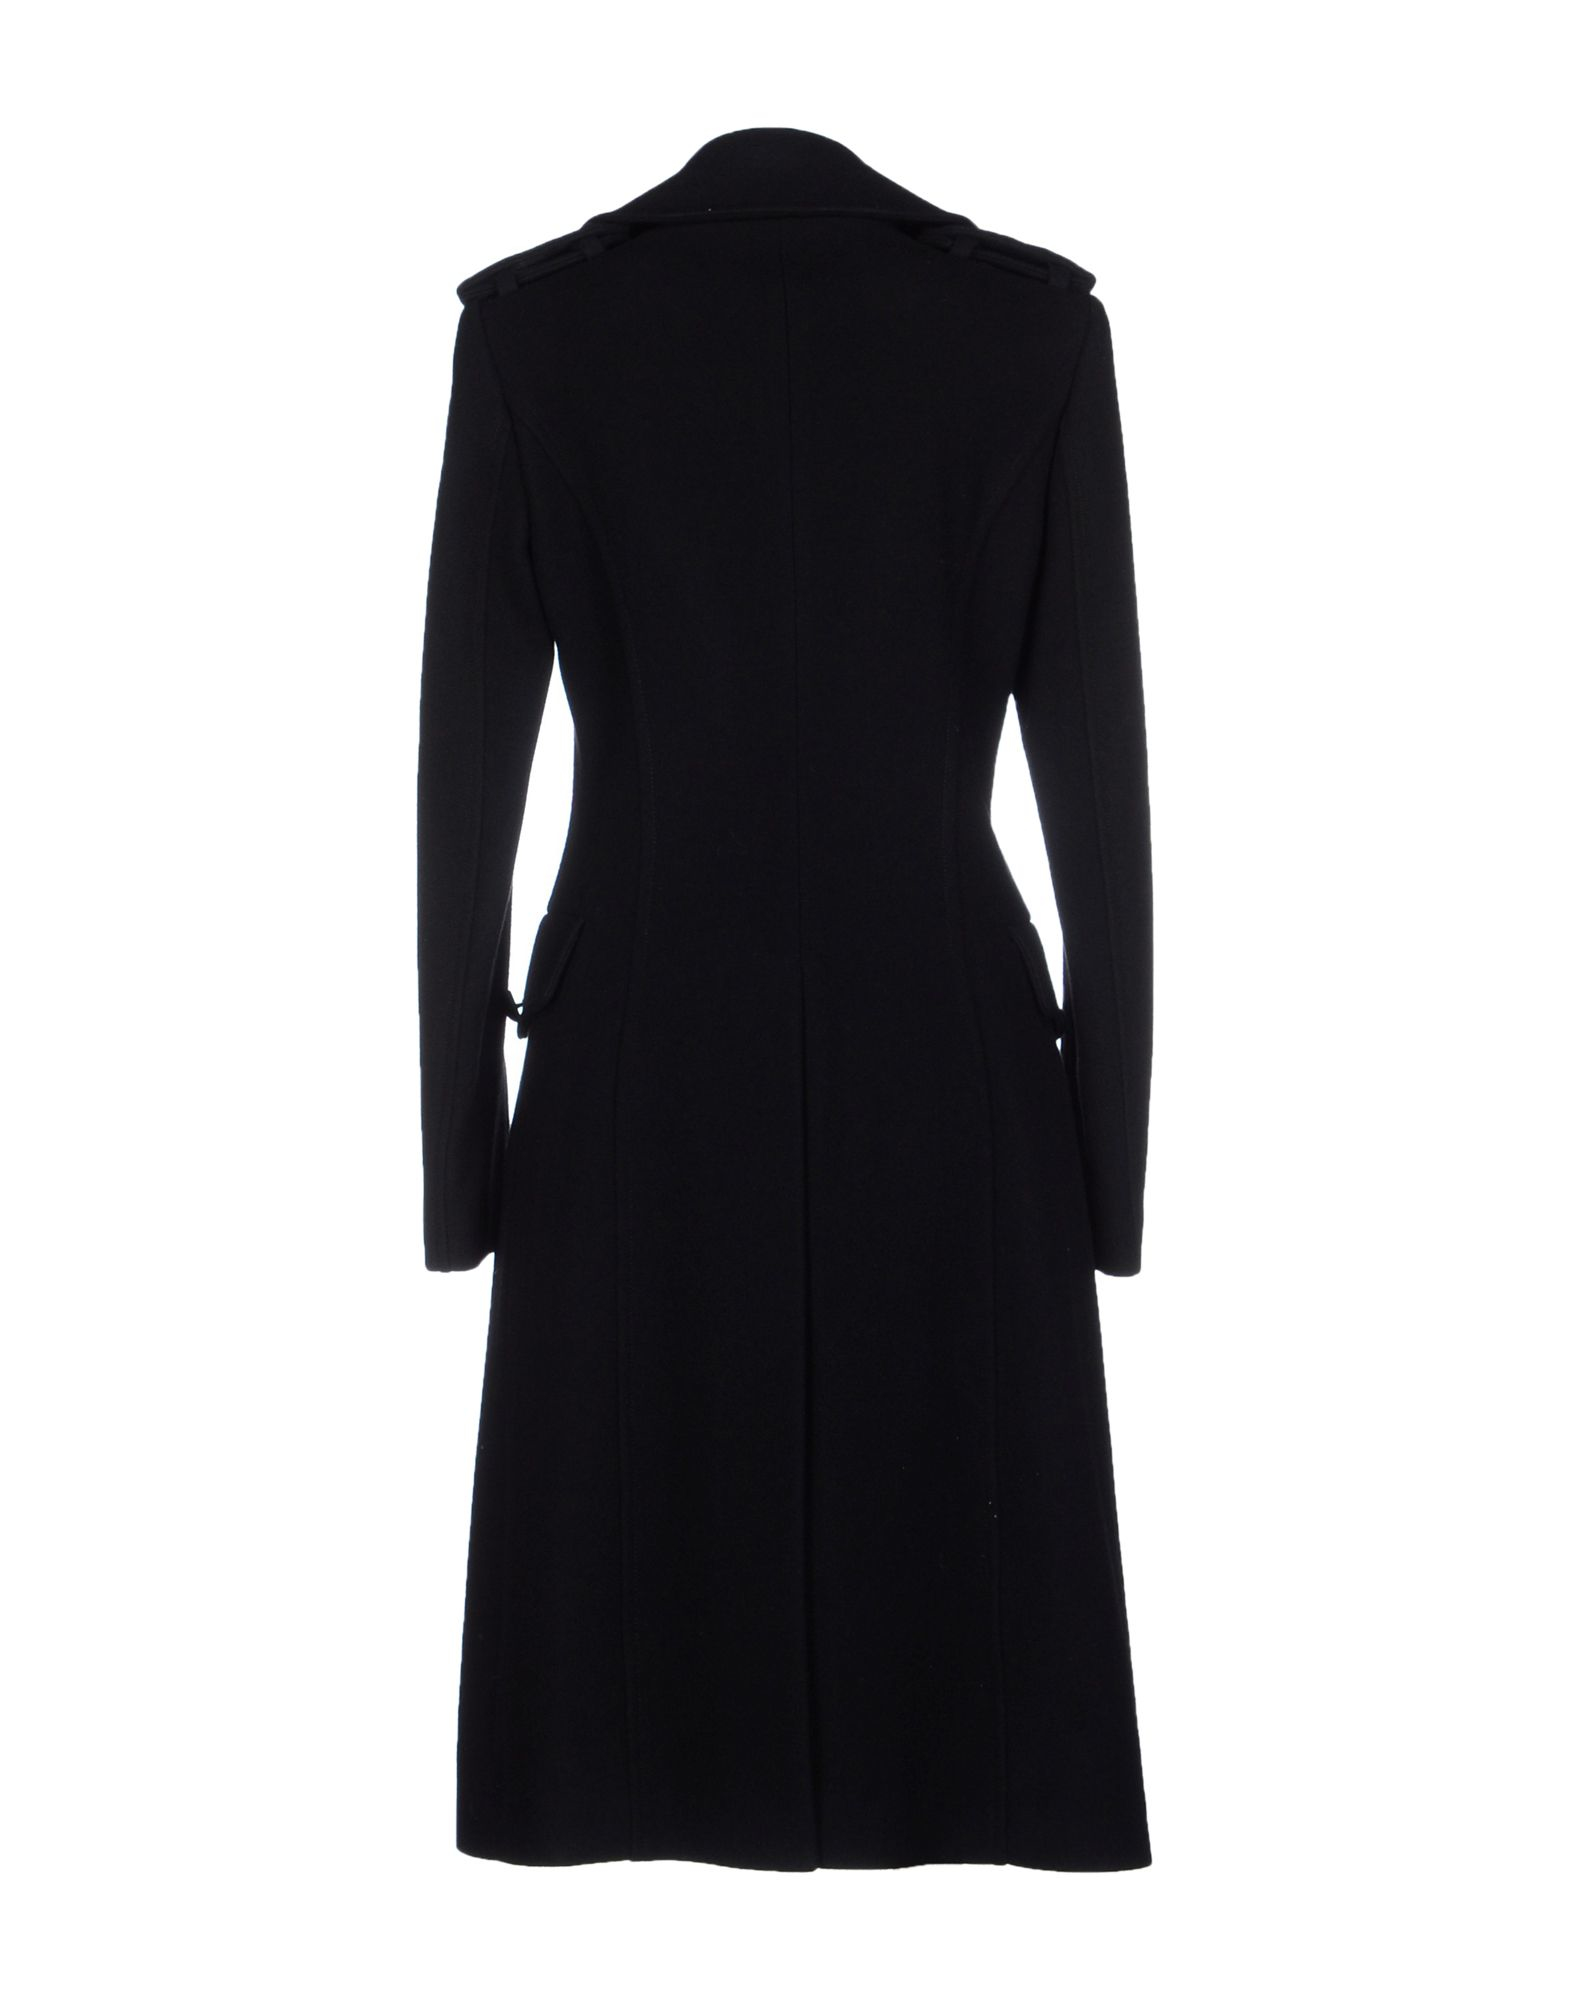 Lyst - Balmain Coat in Black